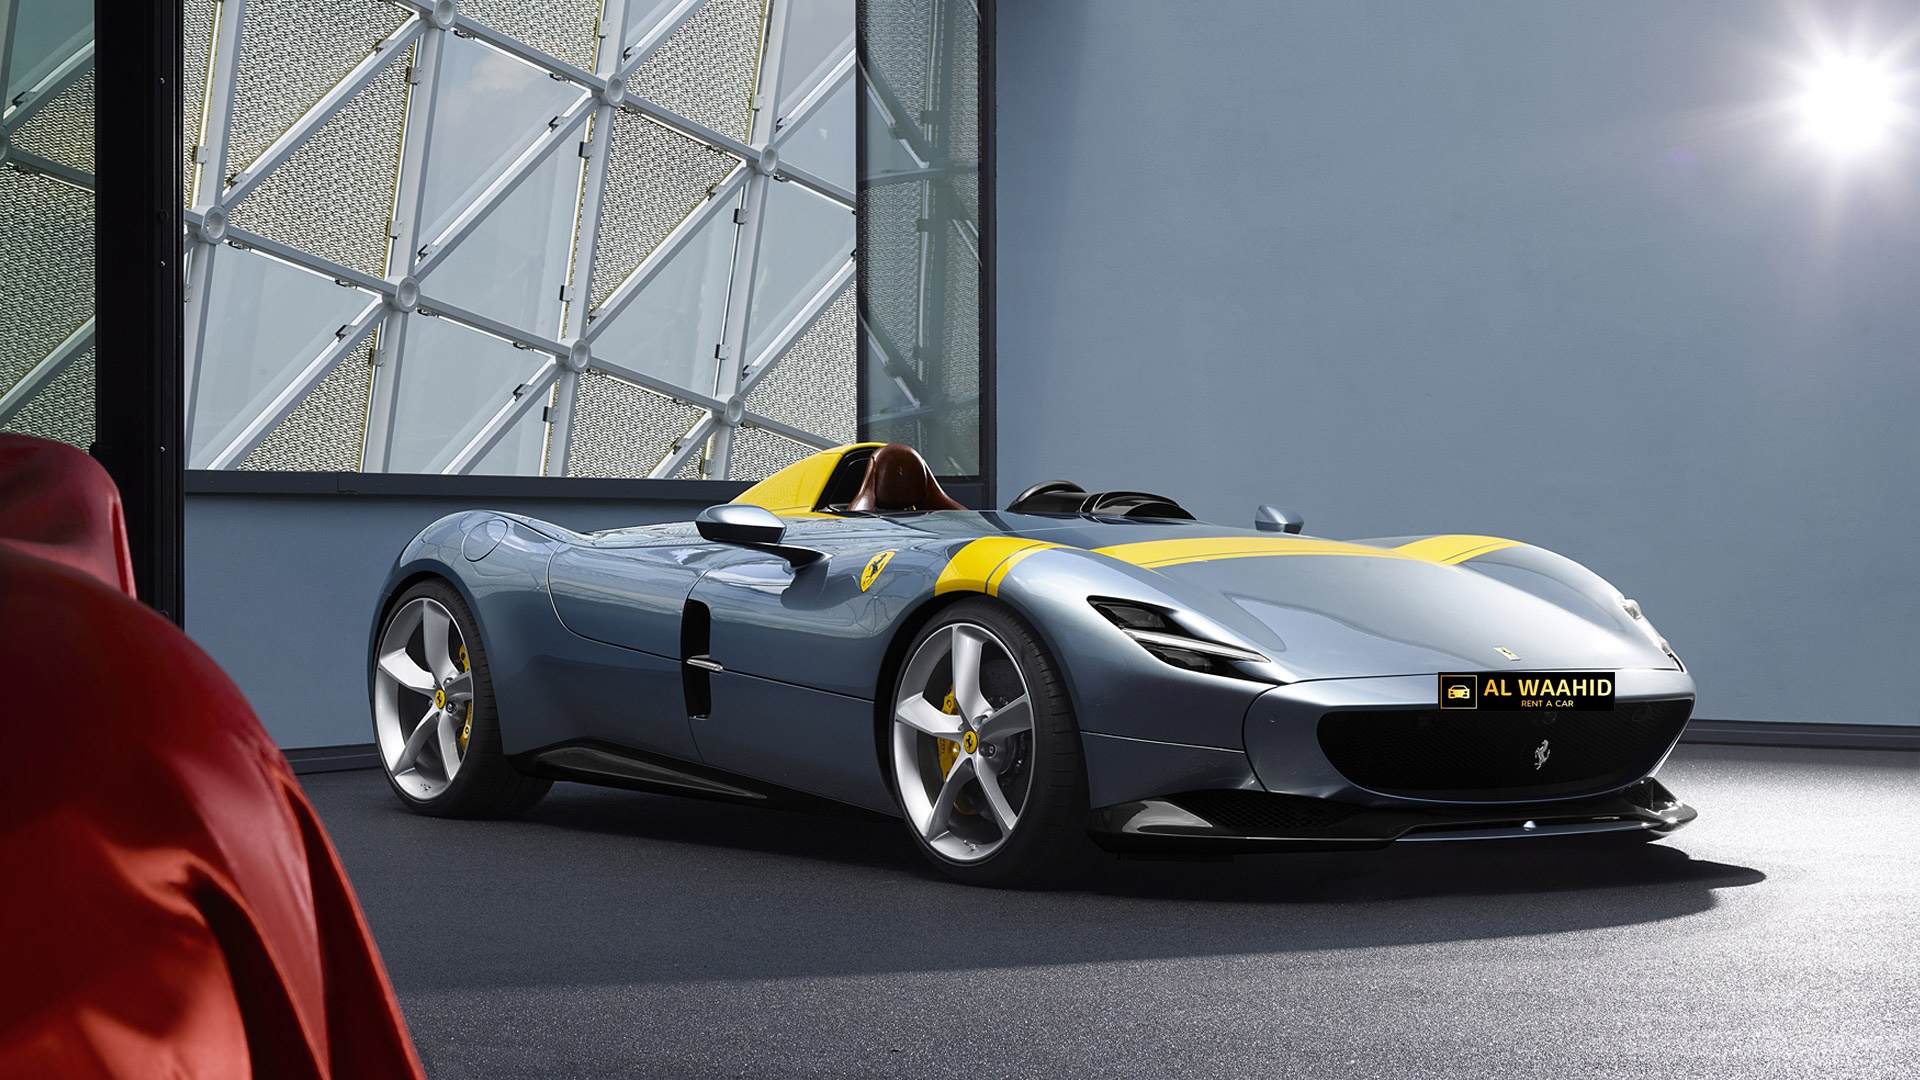 2019 Ferrari Monza SP1 rental dubai luxury cars rental dubai